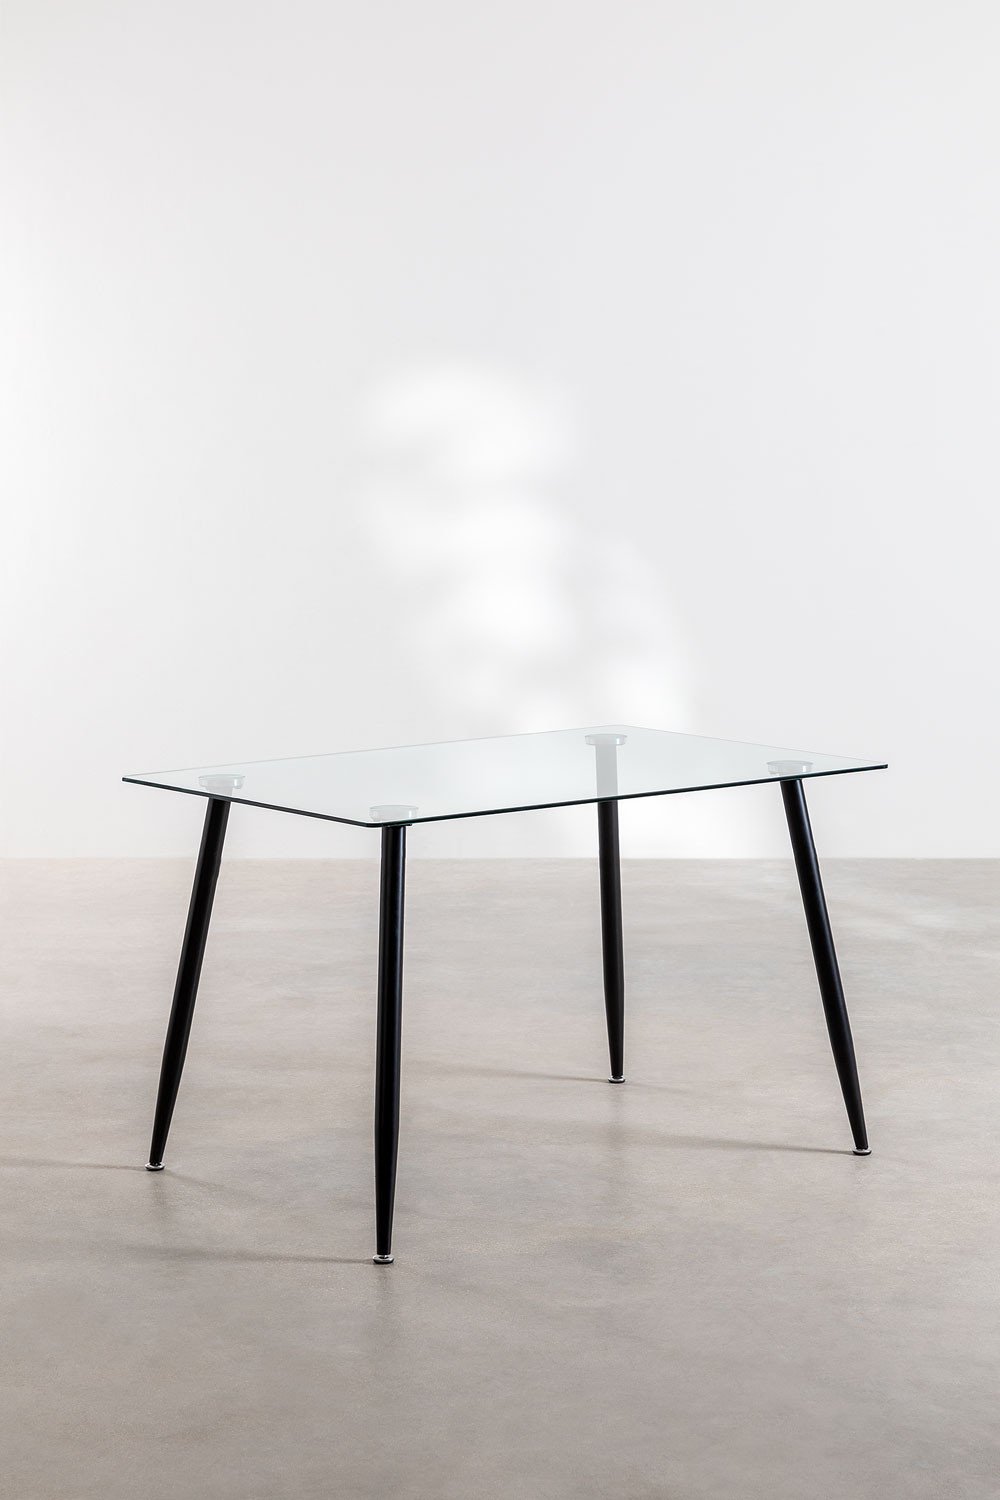 Rechthoekige eettafel van glas en staal (120x80 cm) Lahs Style, galerij beeld 1